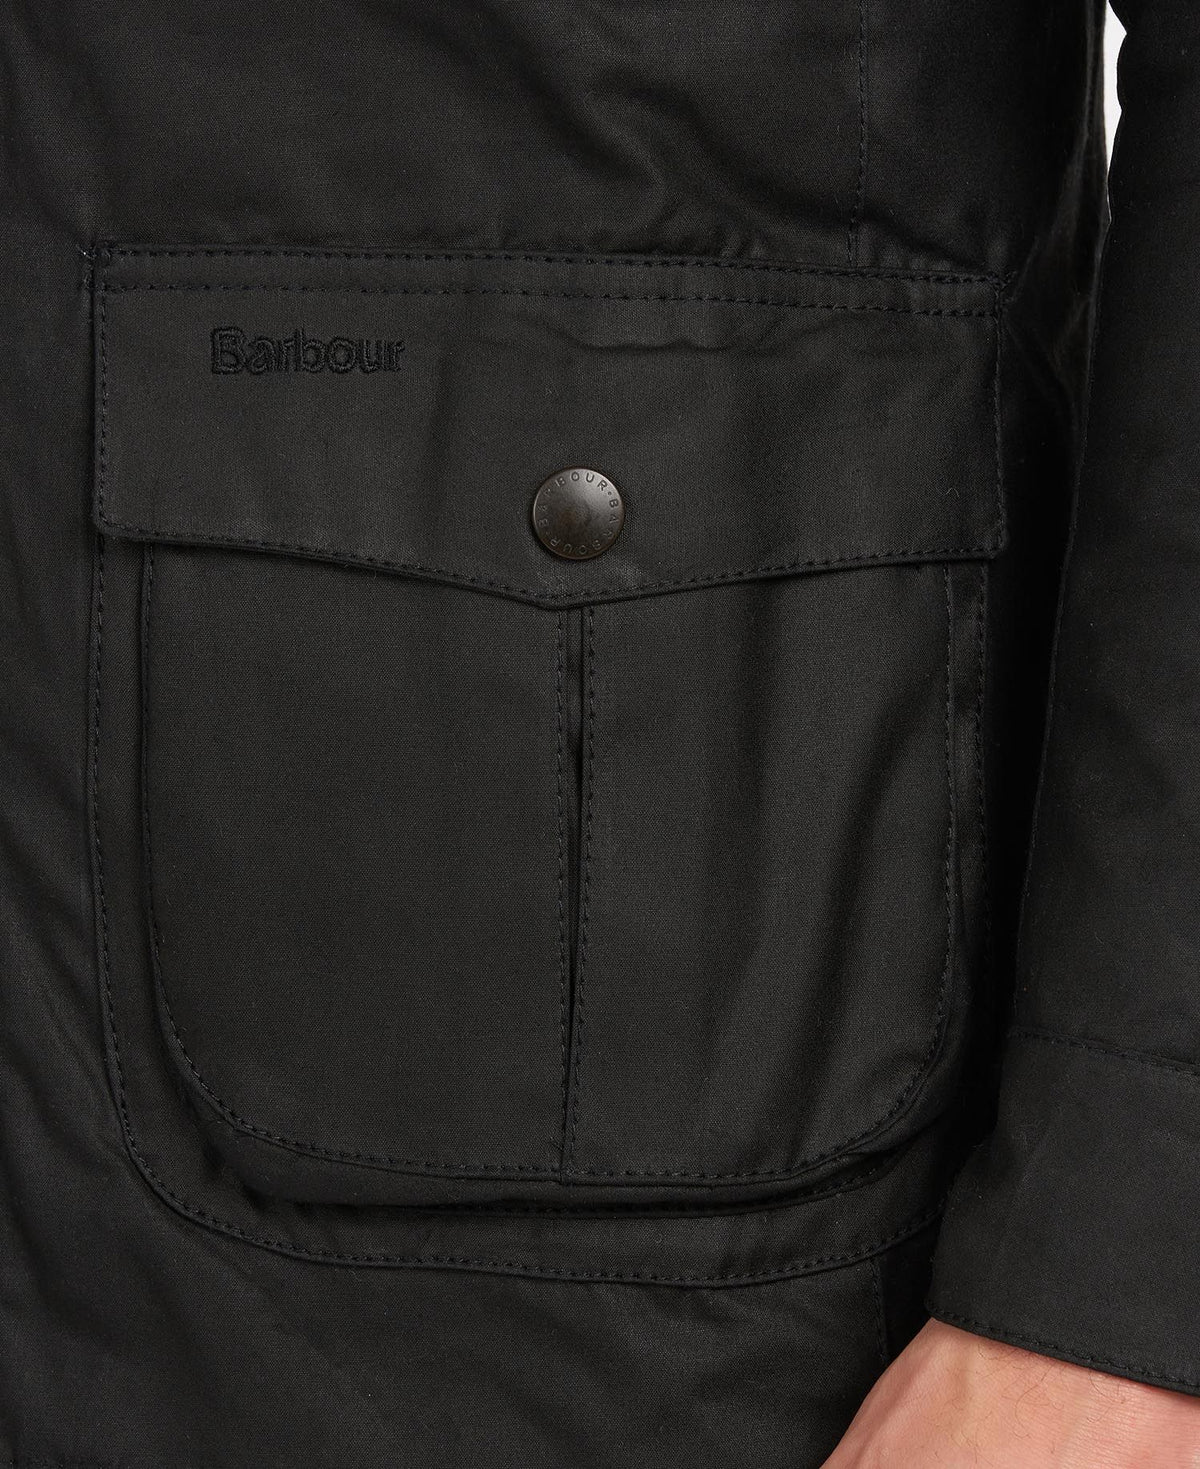 Barbour Men's Corbridge Wax Jacket, 03, Mwx0340, Black